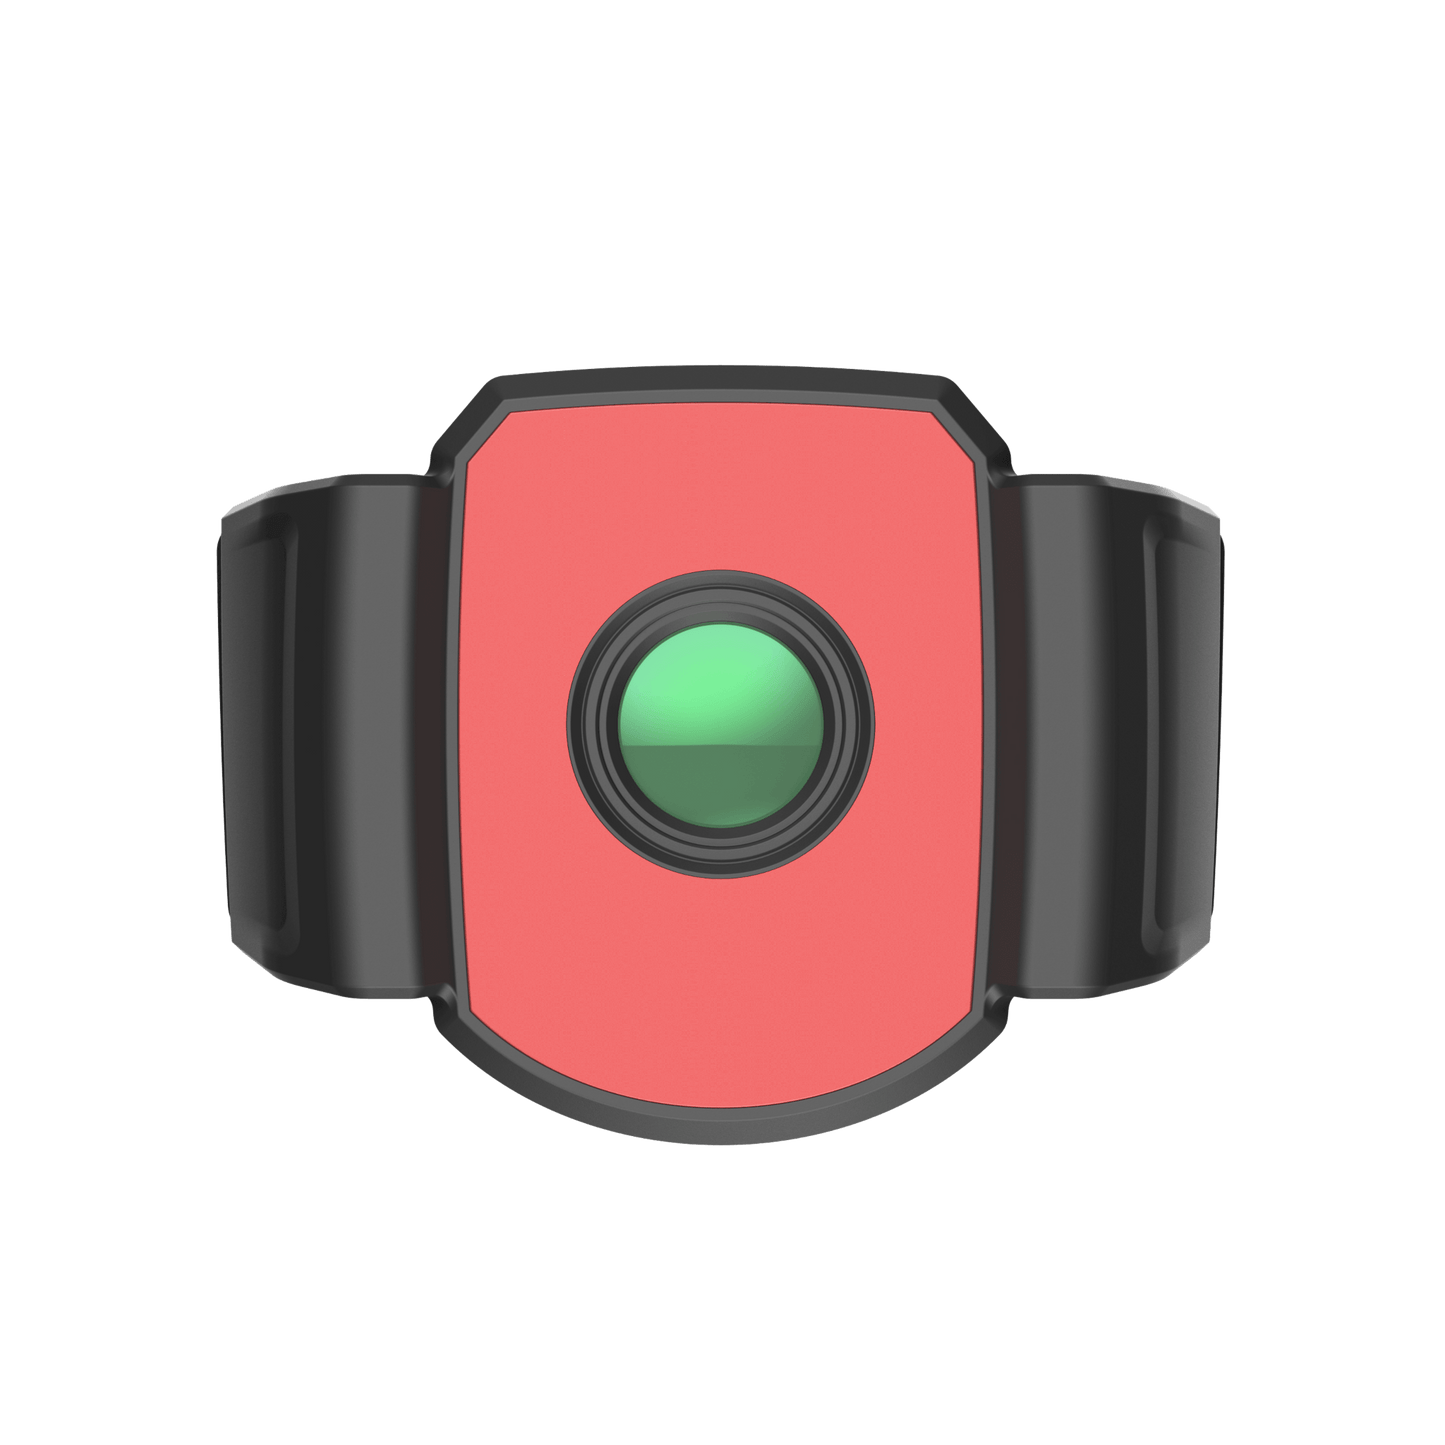 HiMicro B-Series Handheld Thermal Camera Macro Lens Front View